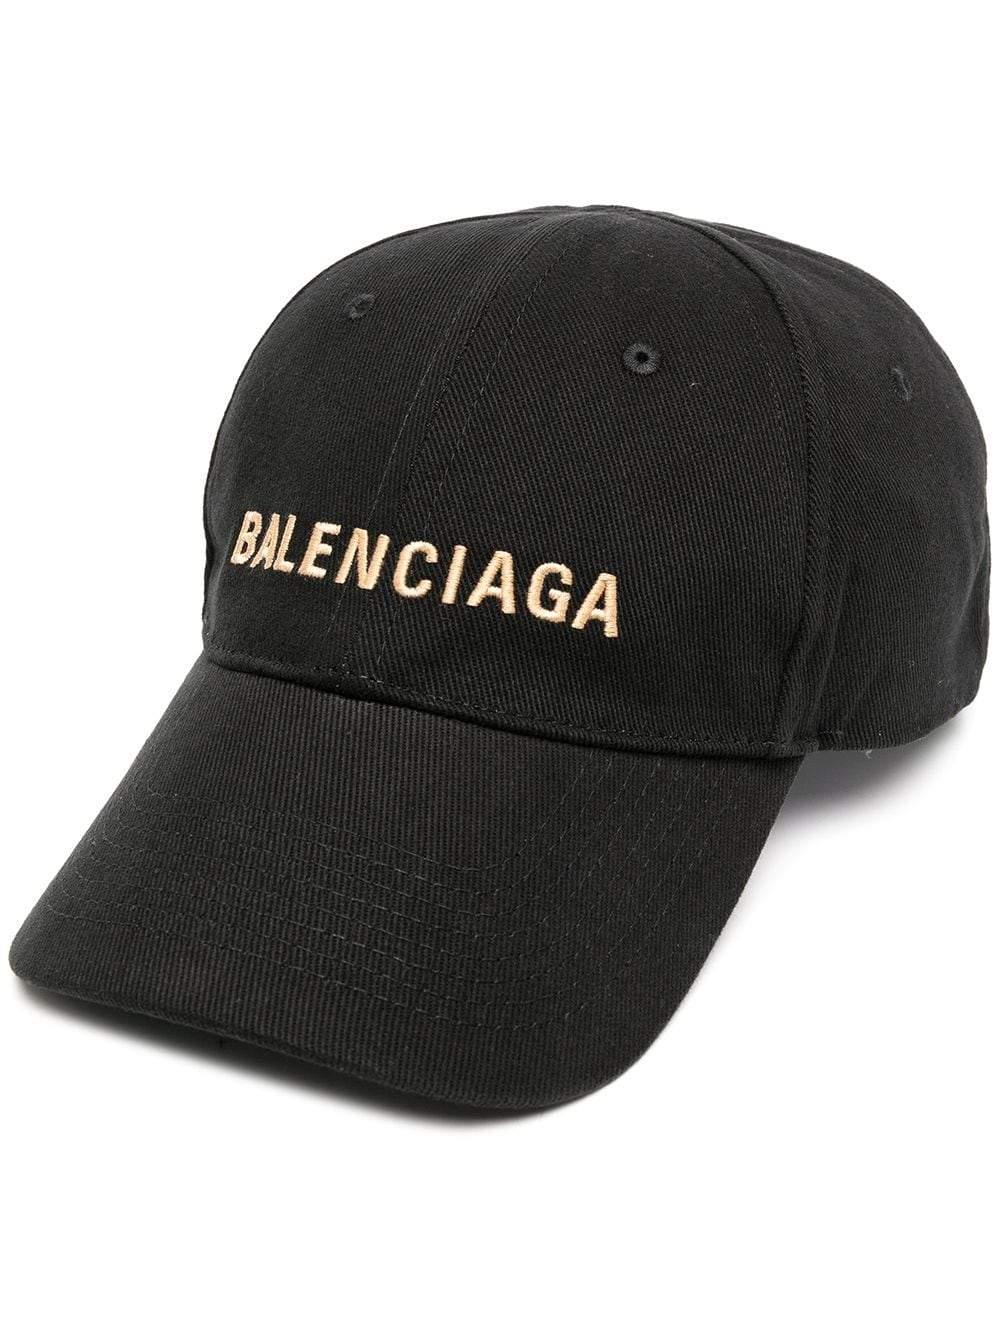 Balenciaga Cotton Embroidered Logo Baseball Cap Black for Men - Lyst